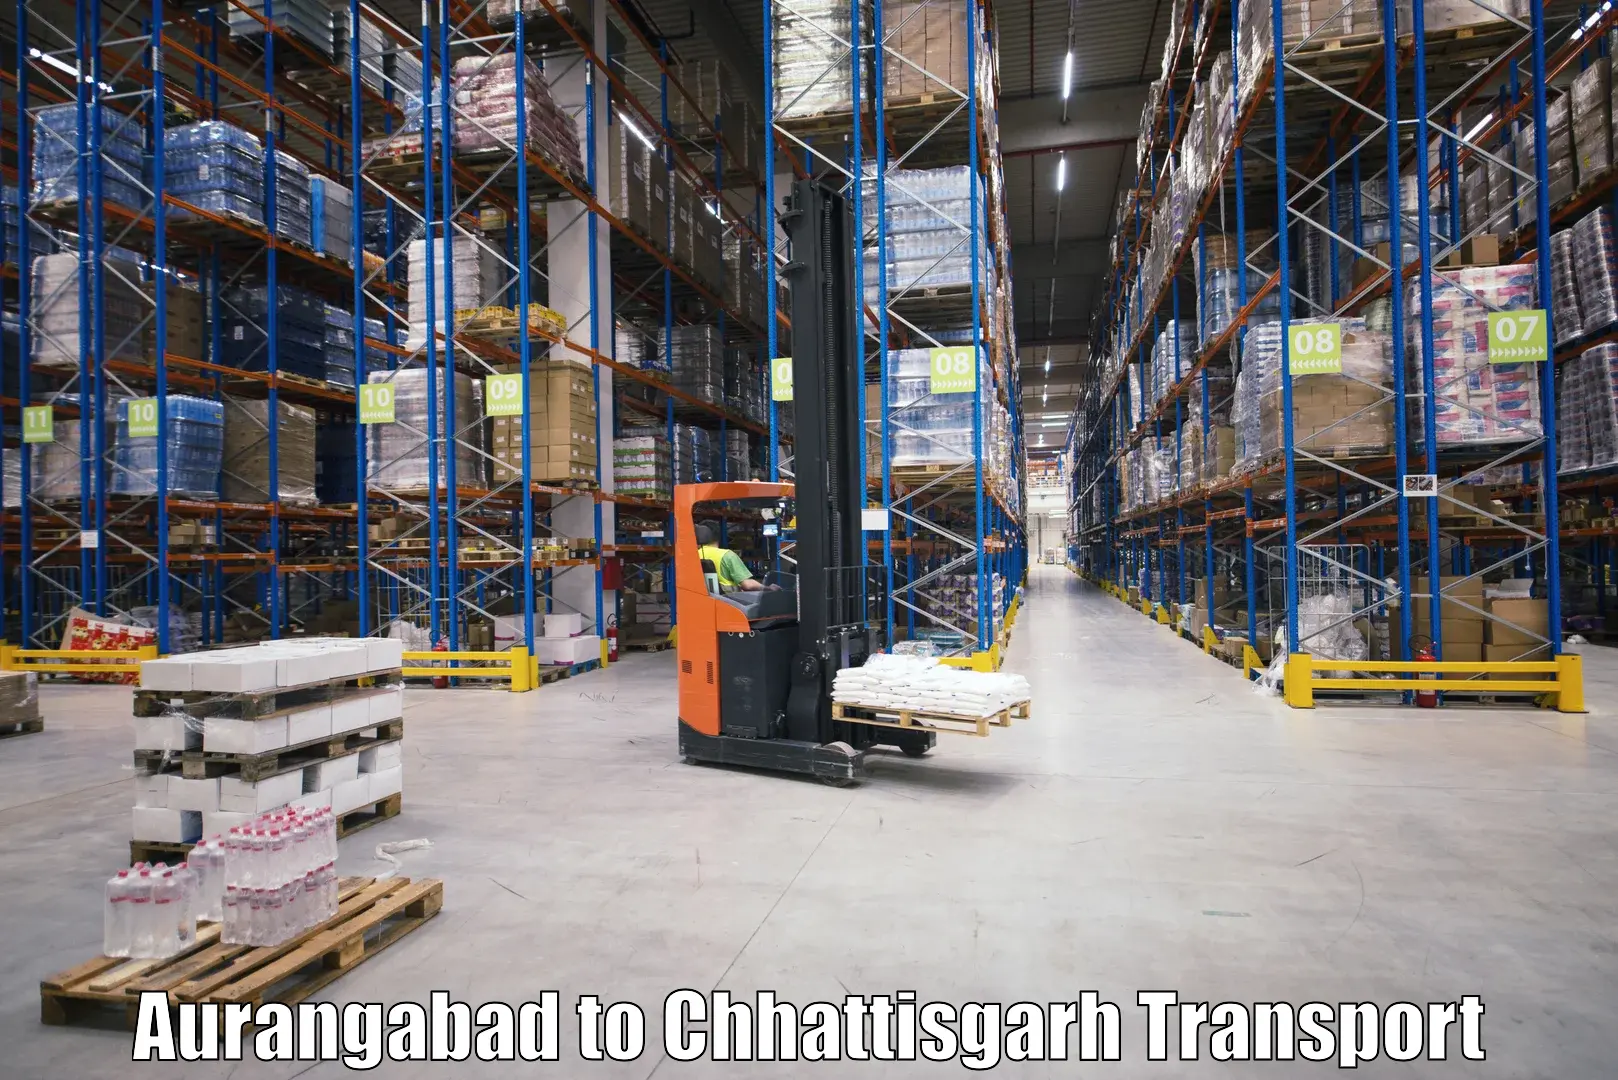 Commercial transport service Aurangabad to Ramanujganj